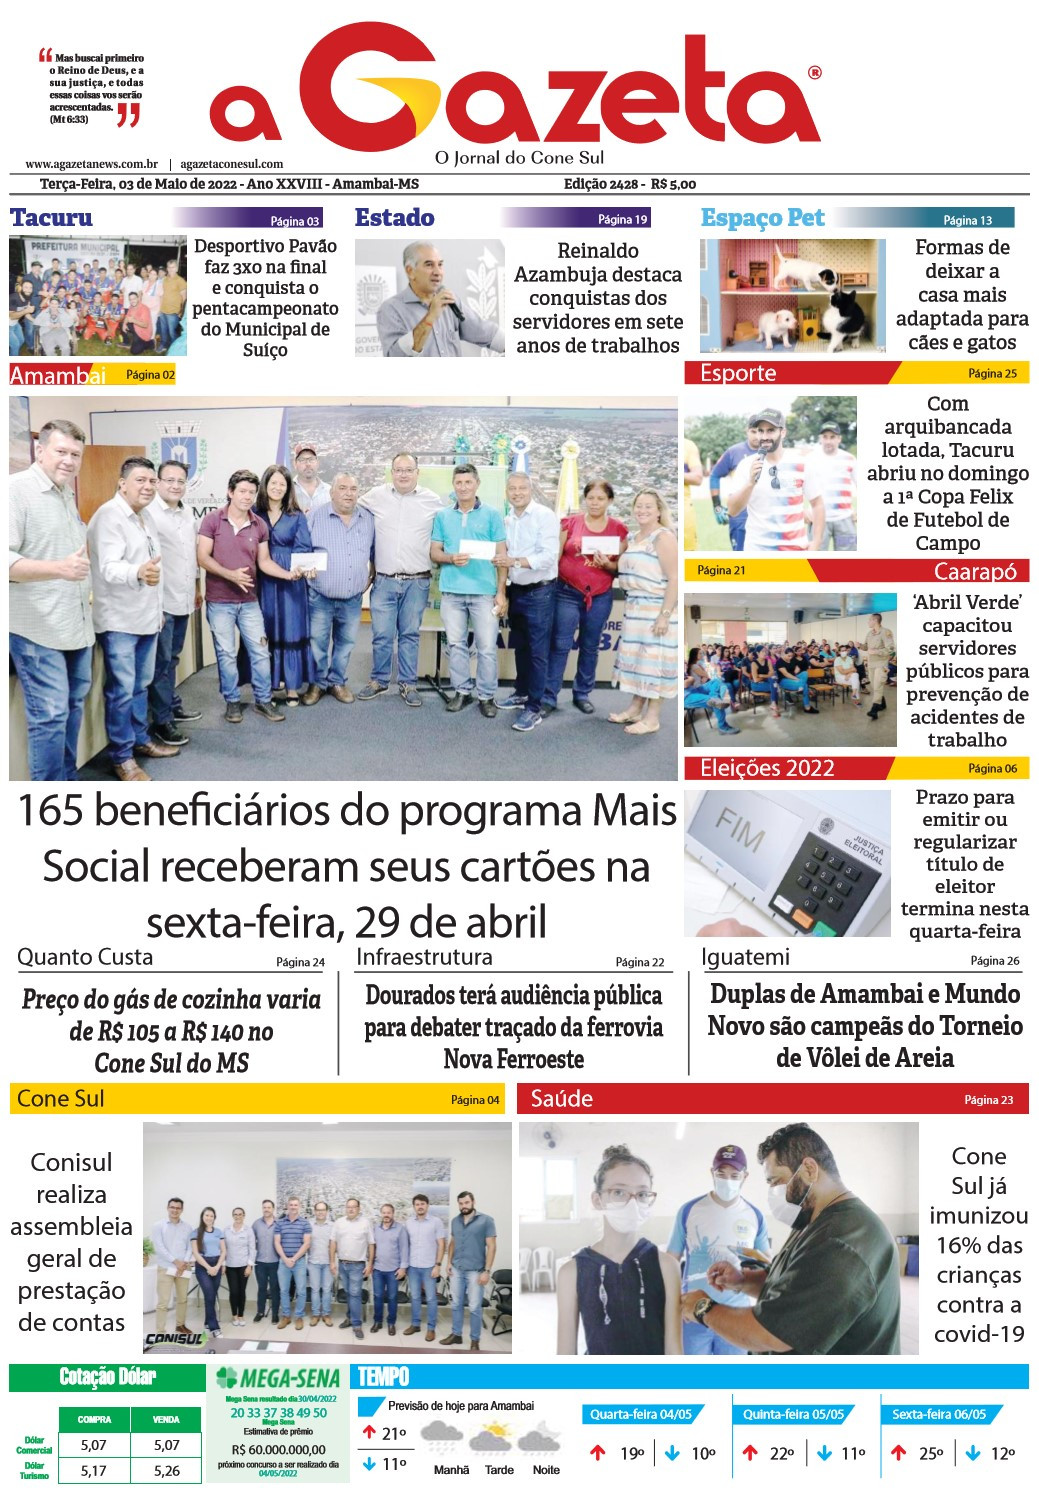 Confira a versão digital do jornal impresso A Gazeta desta terça-feira, dia 03